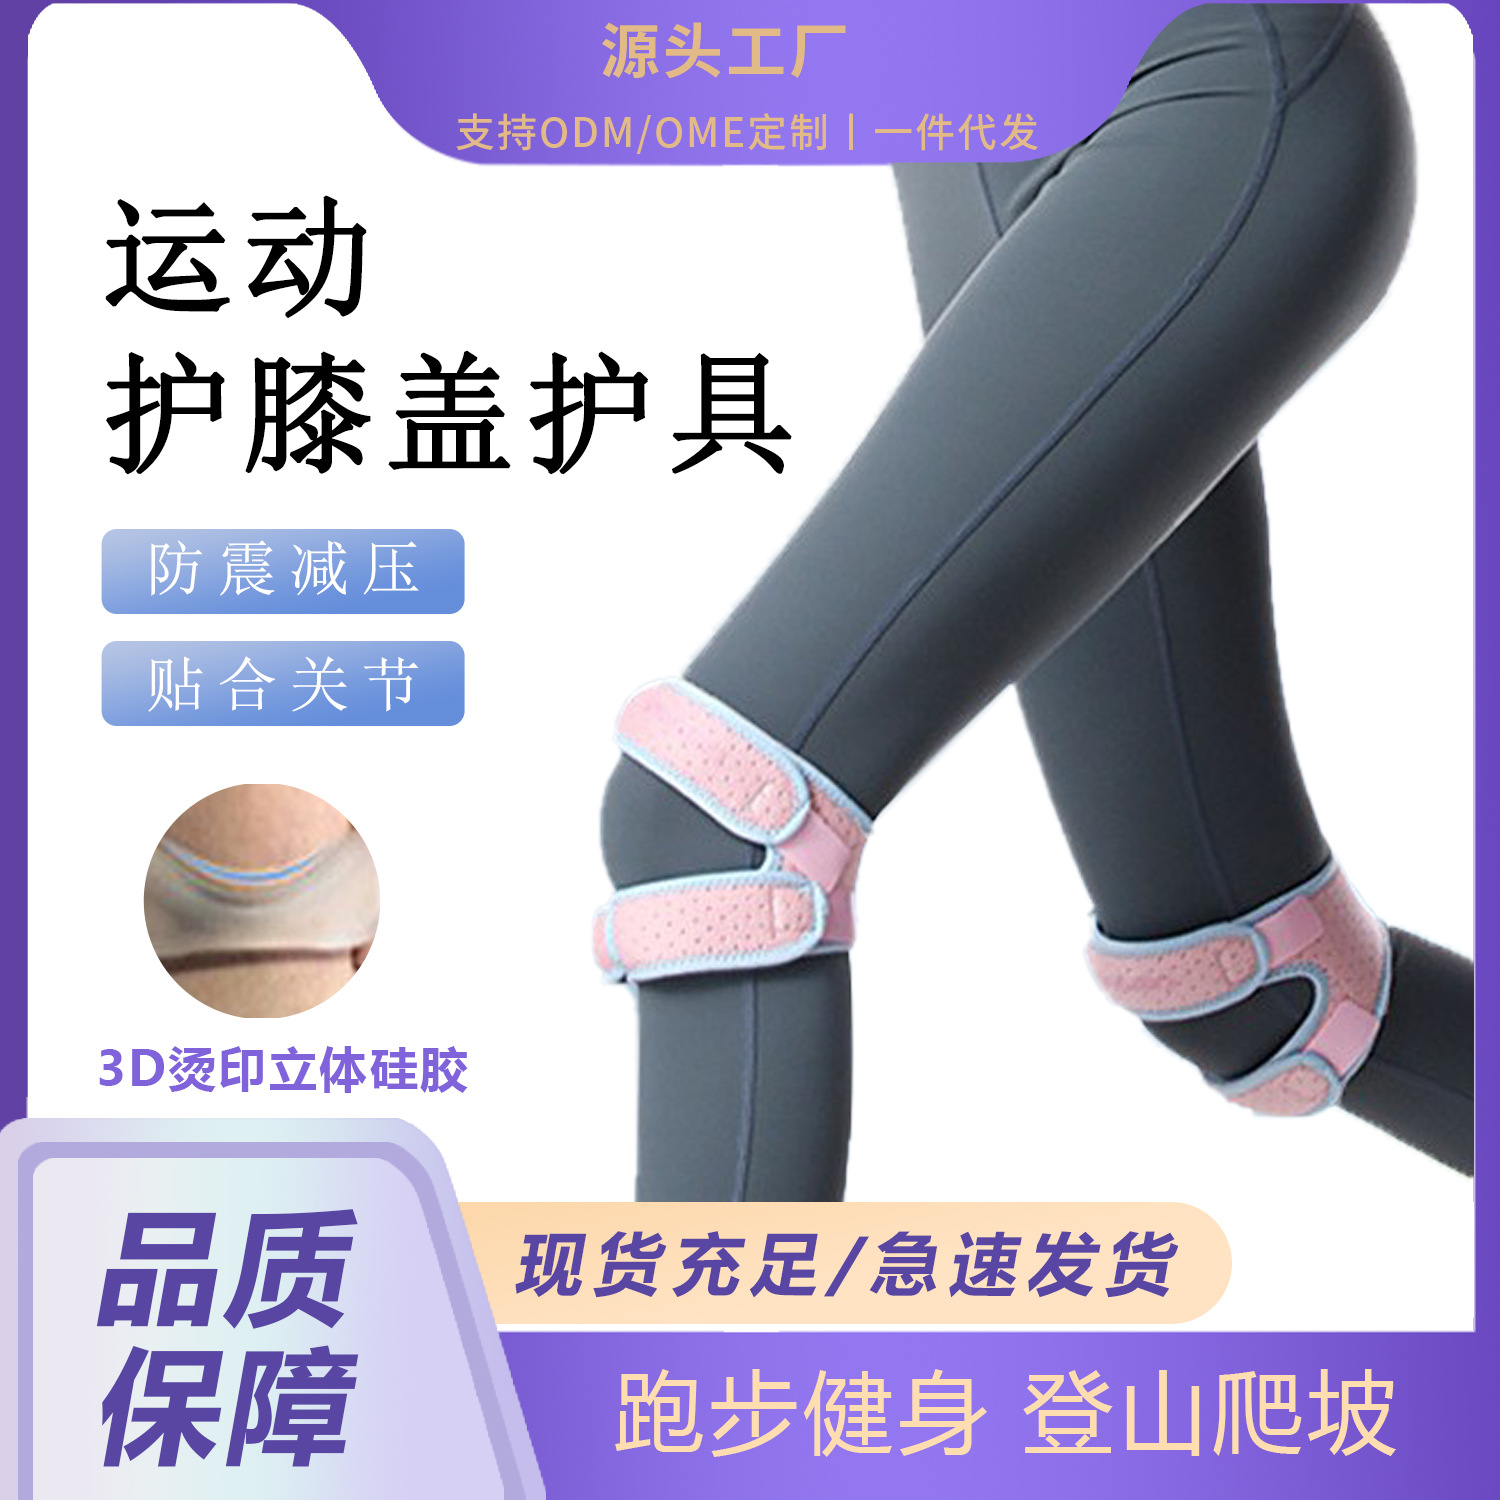 专业髌骨带男女跑步健身半月板运动护膝盖护具关节保护套冰骨